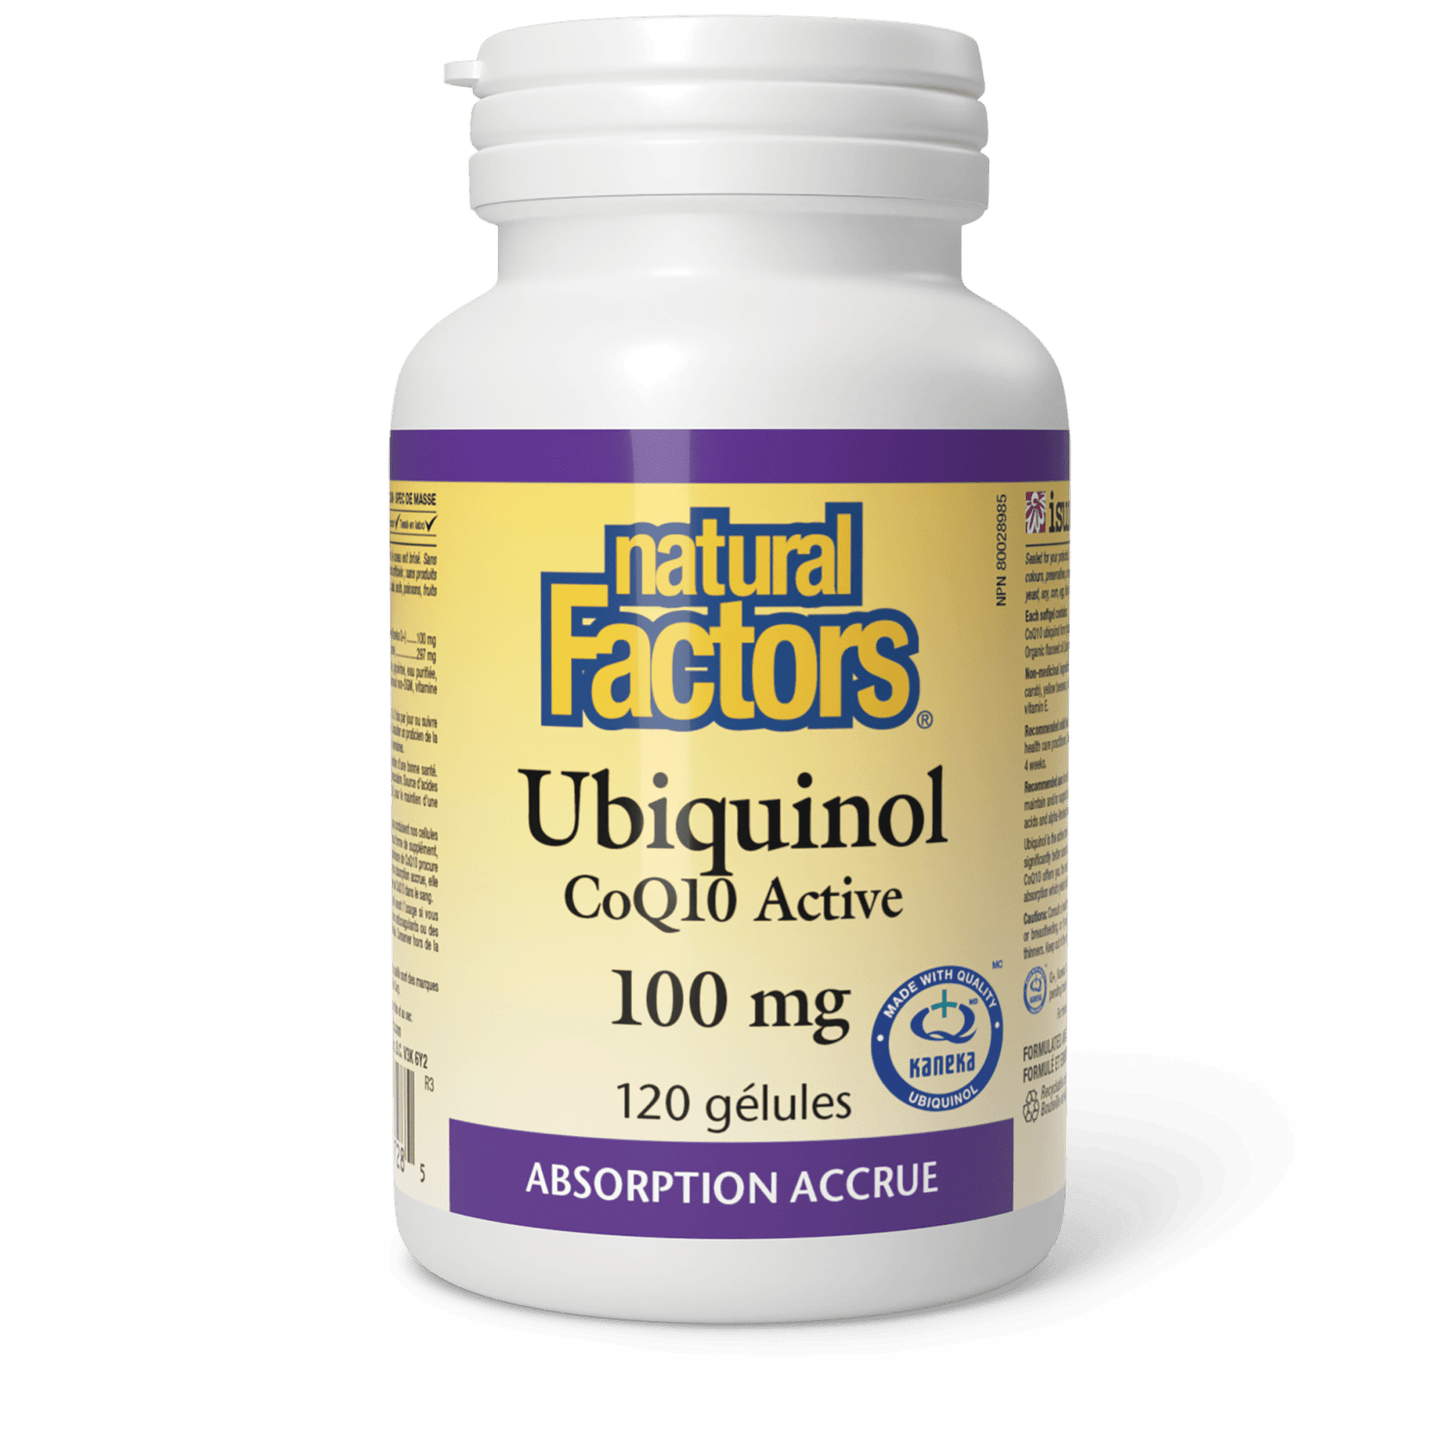 Ubiquinol CoQ10 Active 100 mg, Natural Factors|v|image|20728